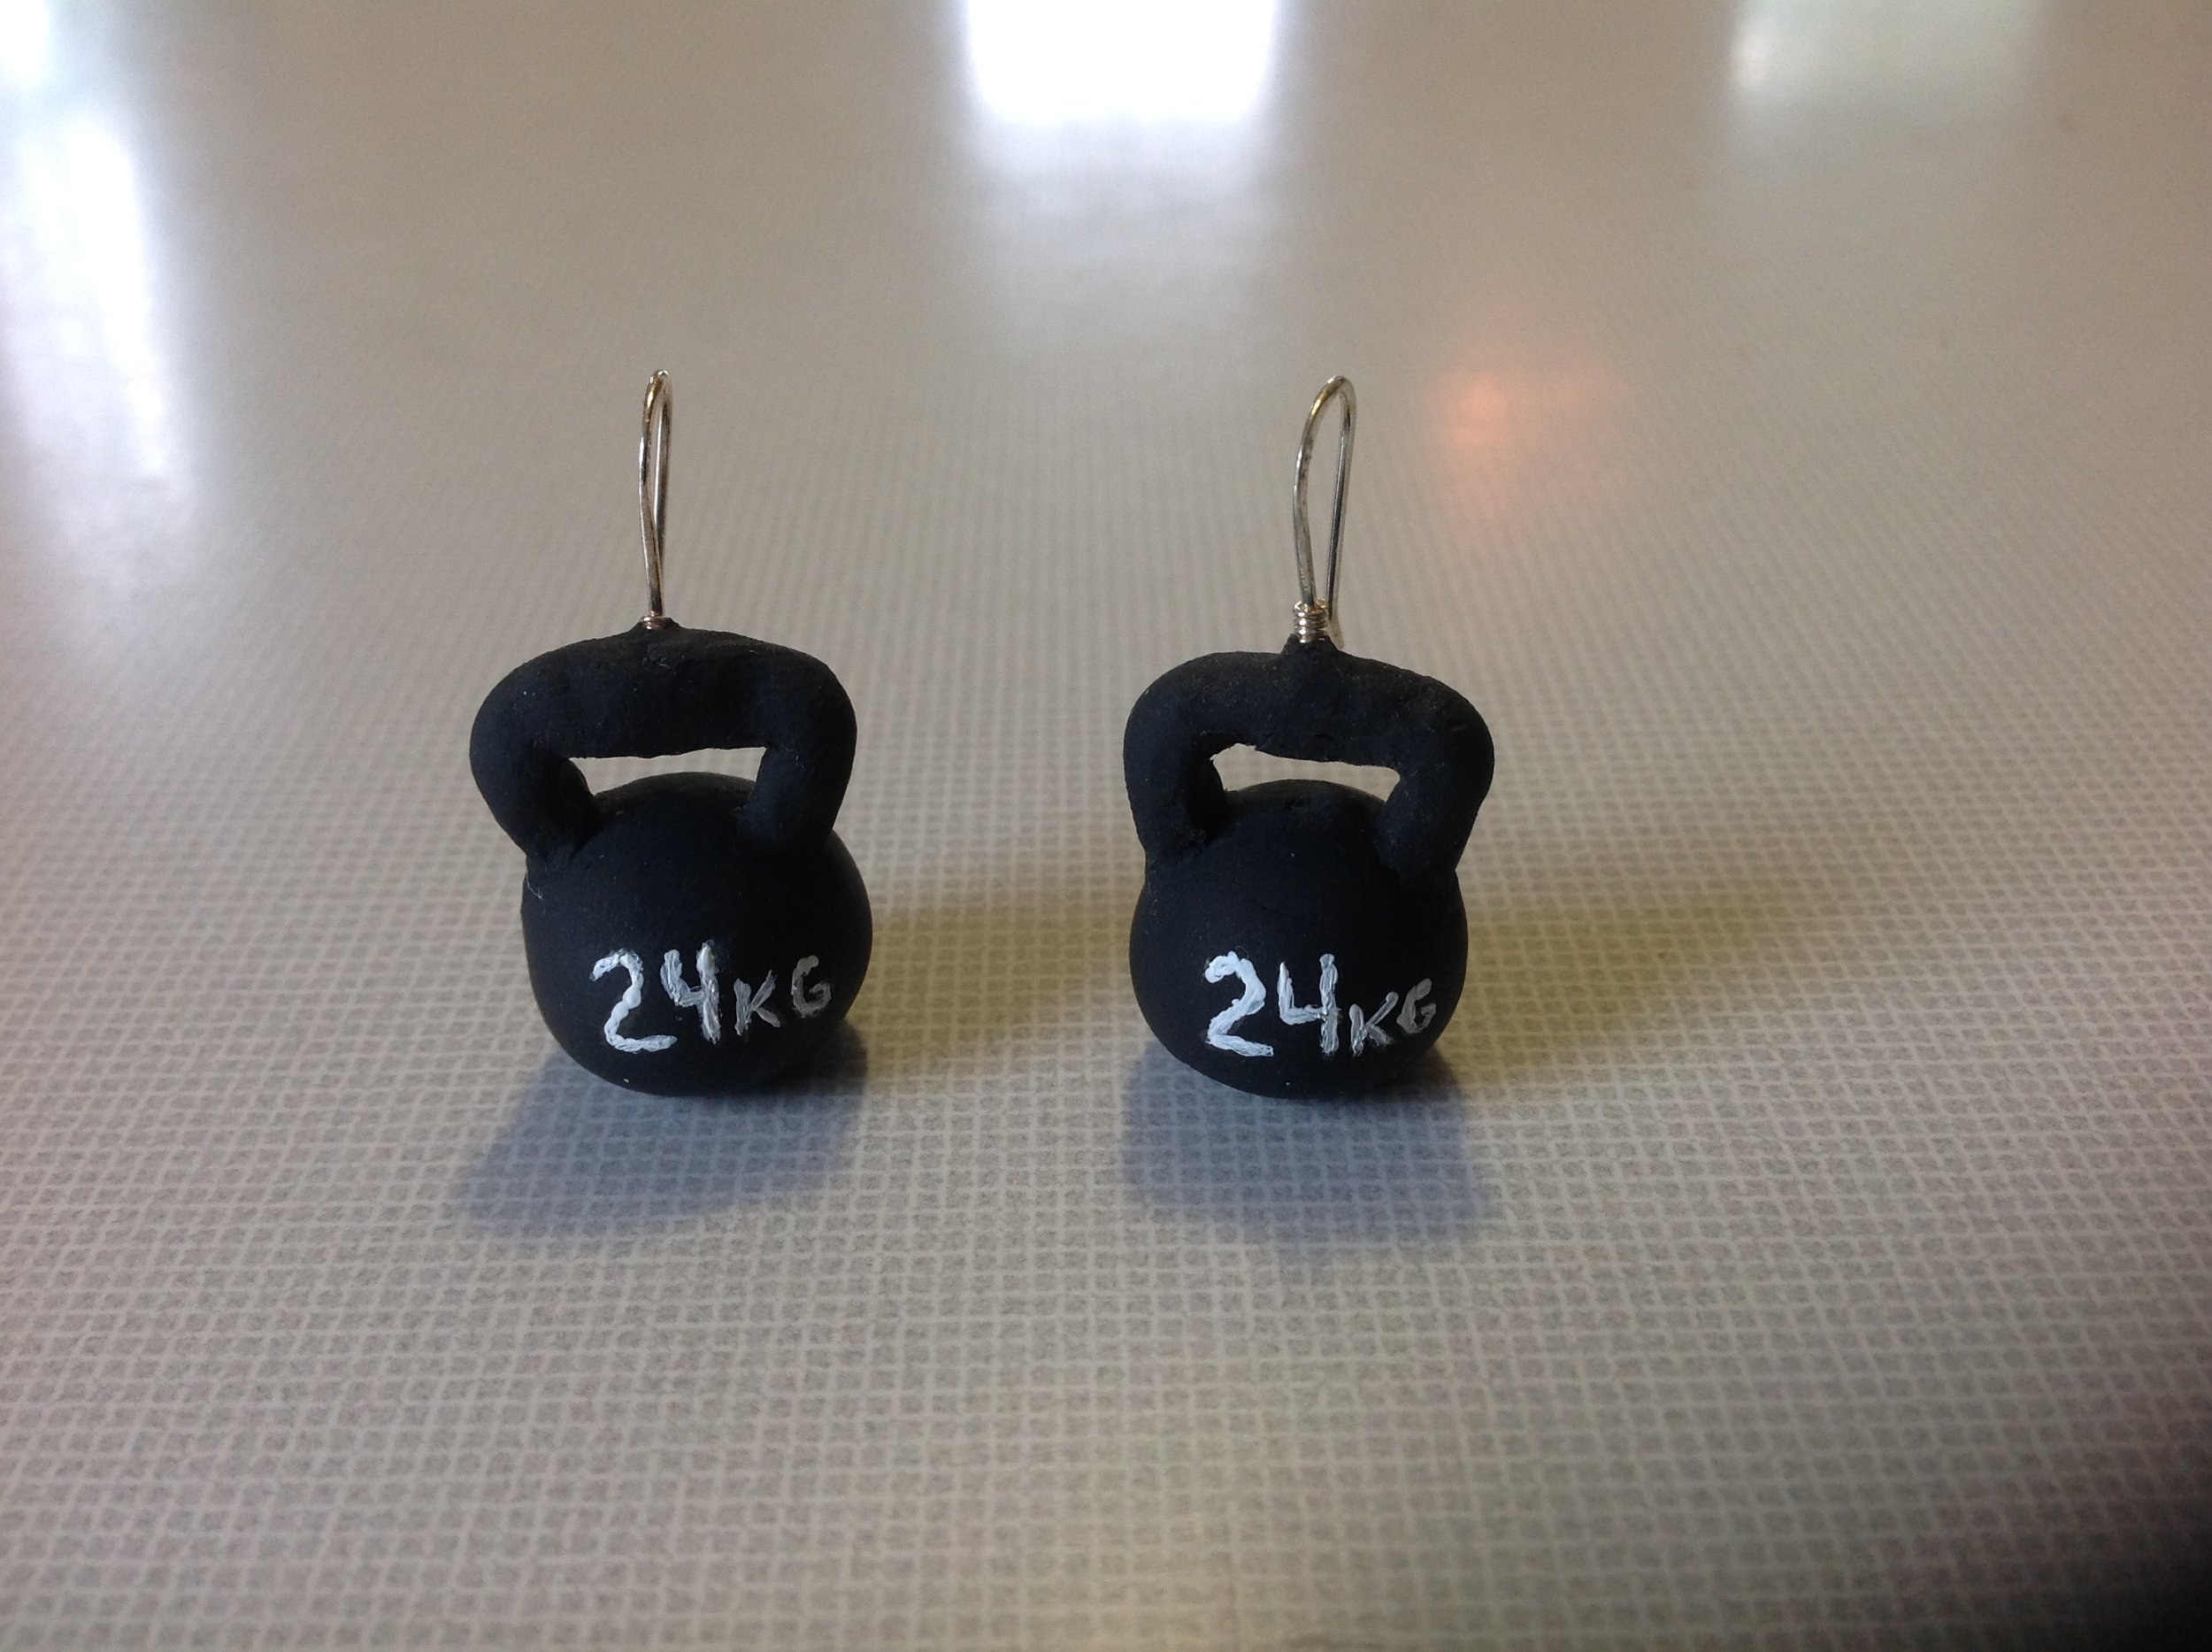 Kettle bell earrings gift.JPG